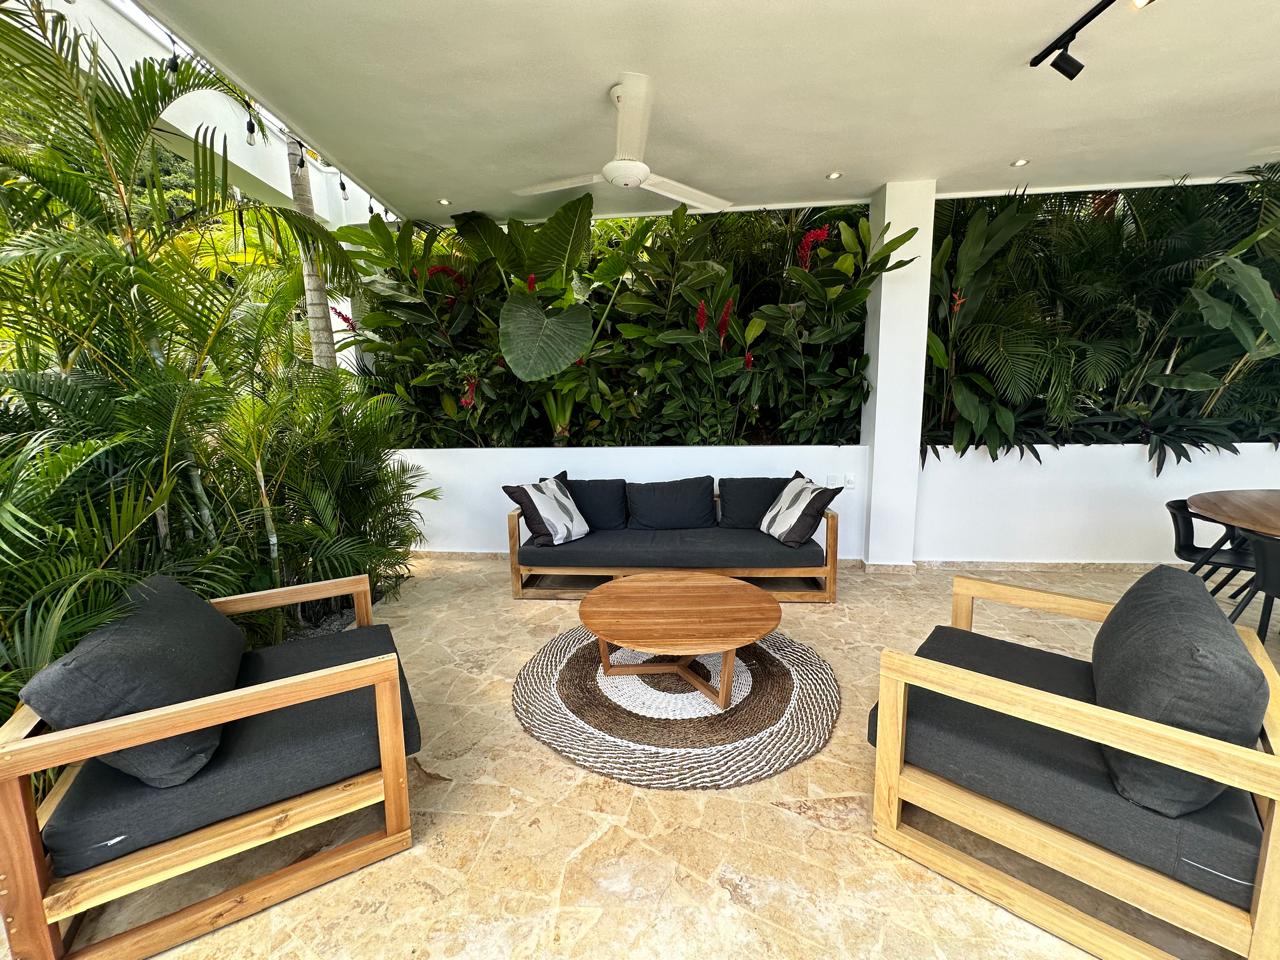 Splendid 4-bedroom villa with ocean vista - Las Terrenas Real Estate - Ocean Edge Dominican Republic (9)